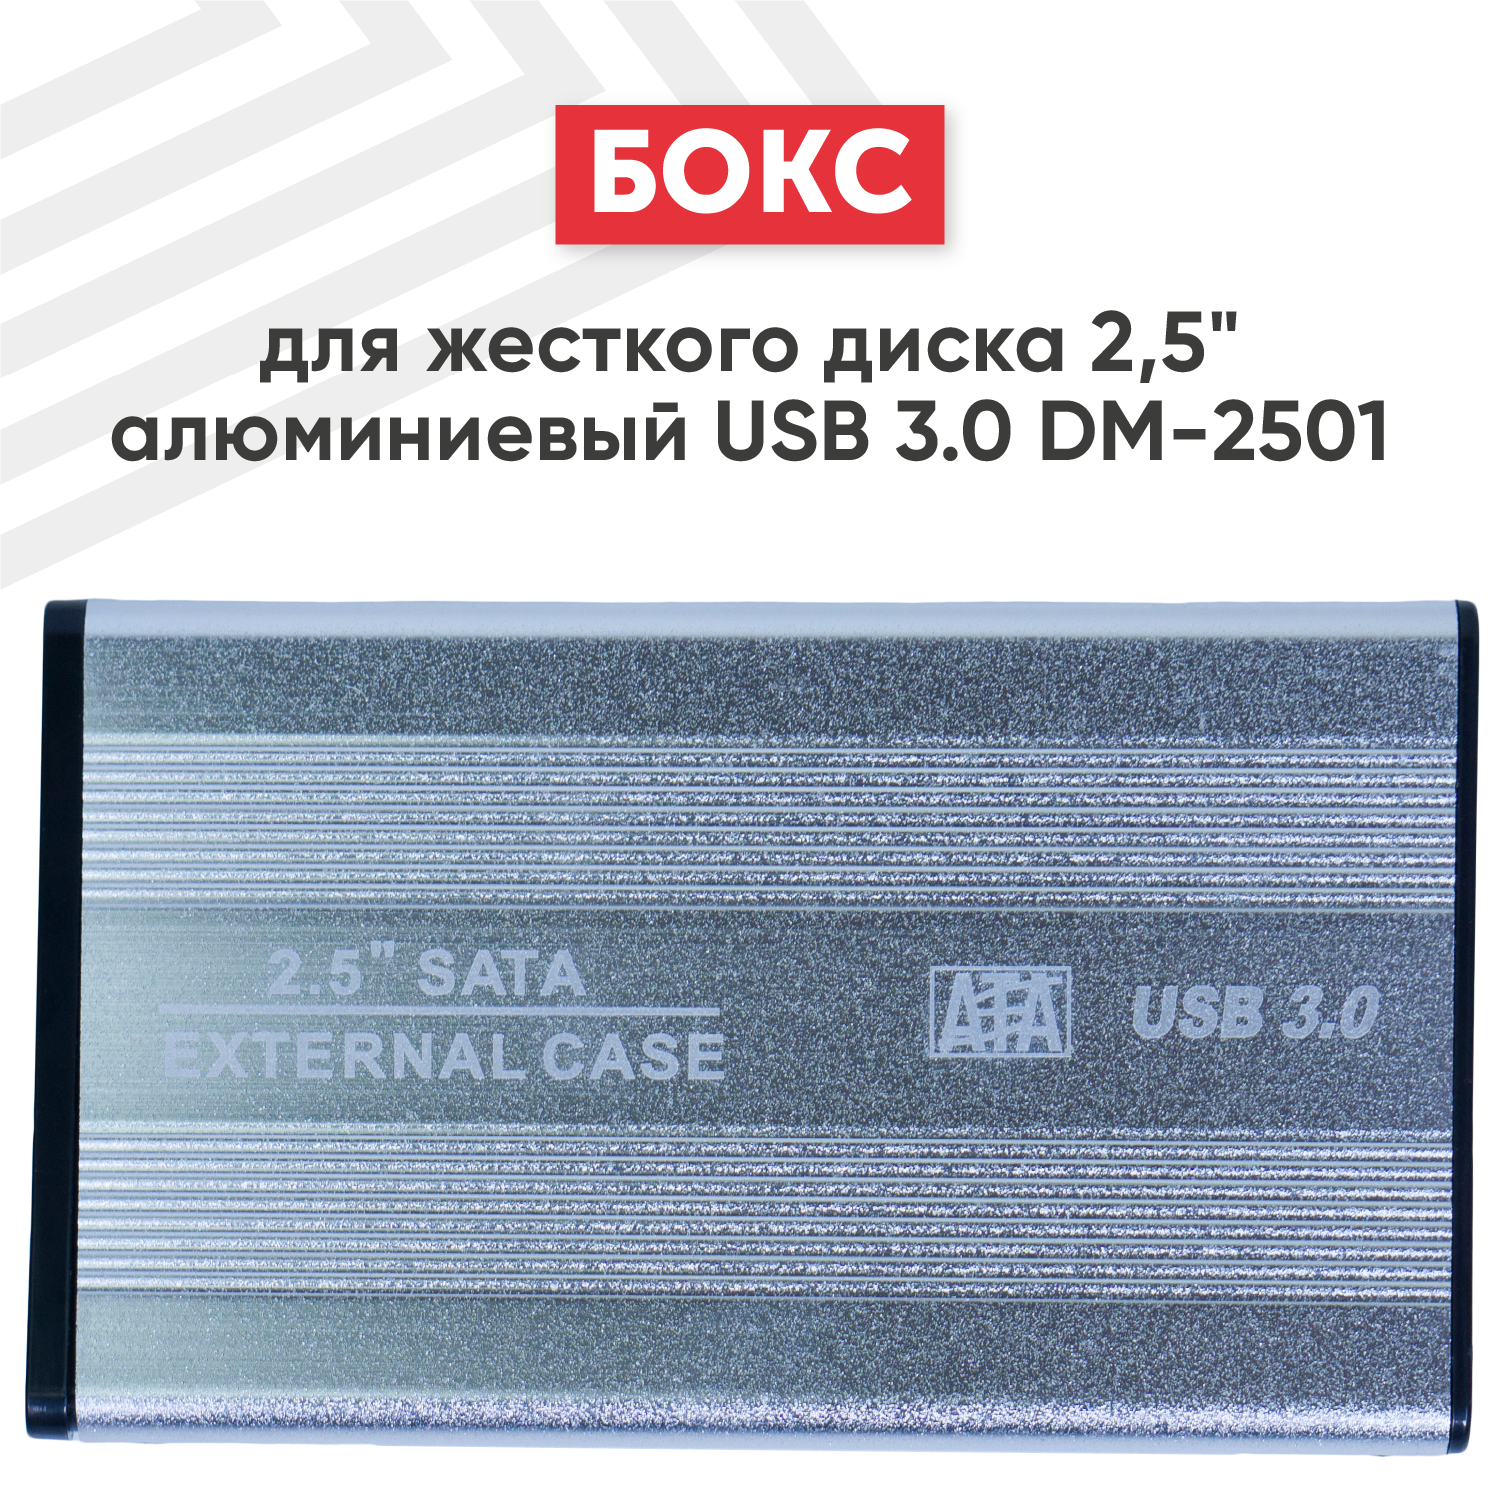 Бокс для жесткого диска 2.5" алюминиевый USB 3.0 DM-2501